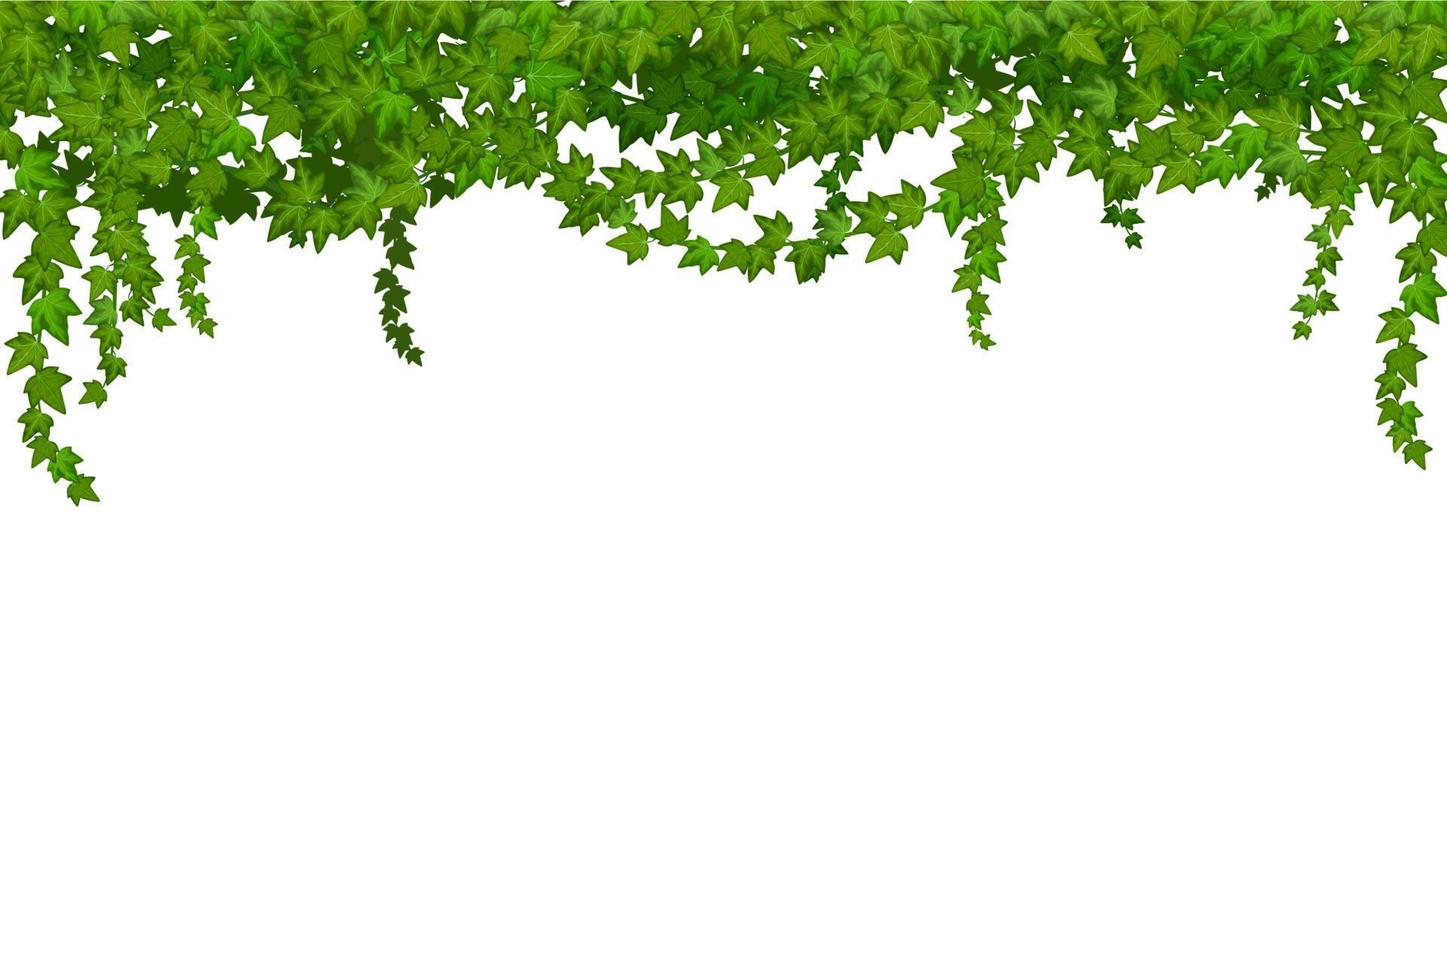 liana de hiedra con hojas verdes, enredaderas tropicales de la selva vector